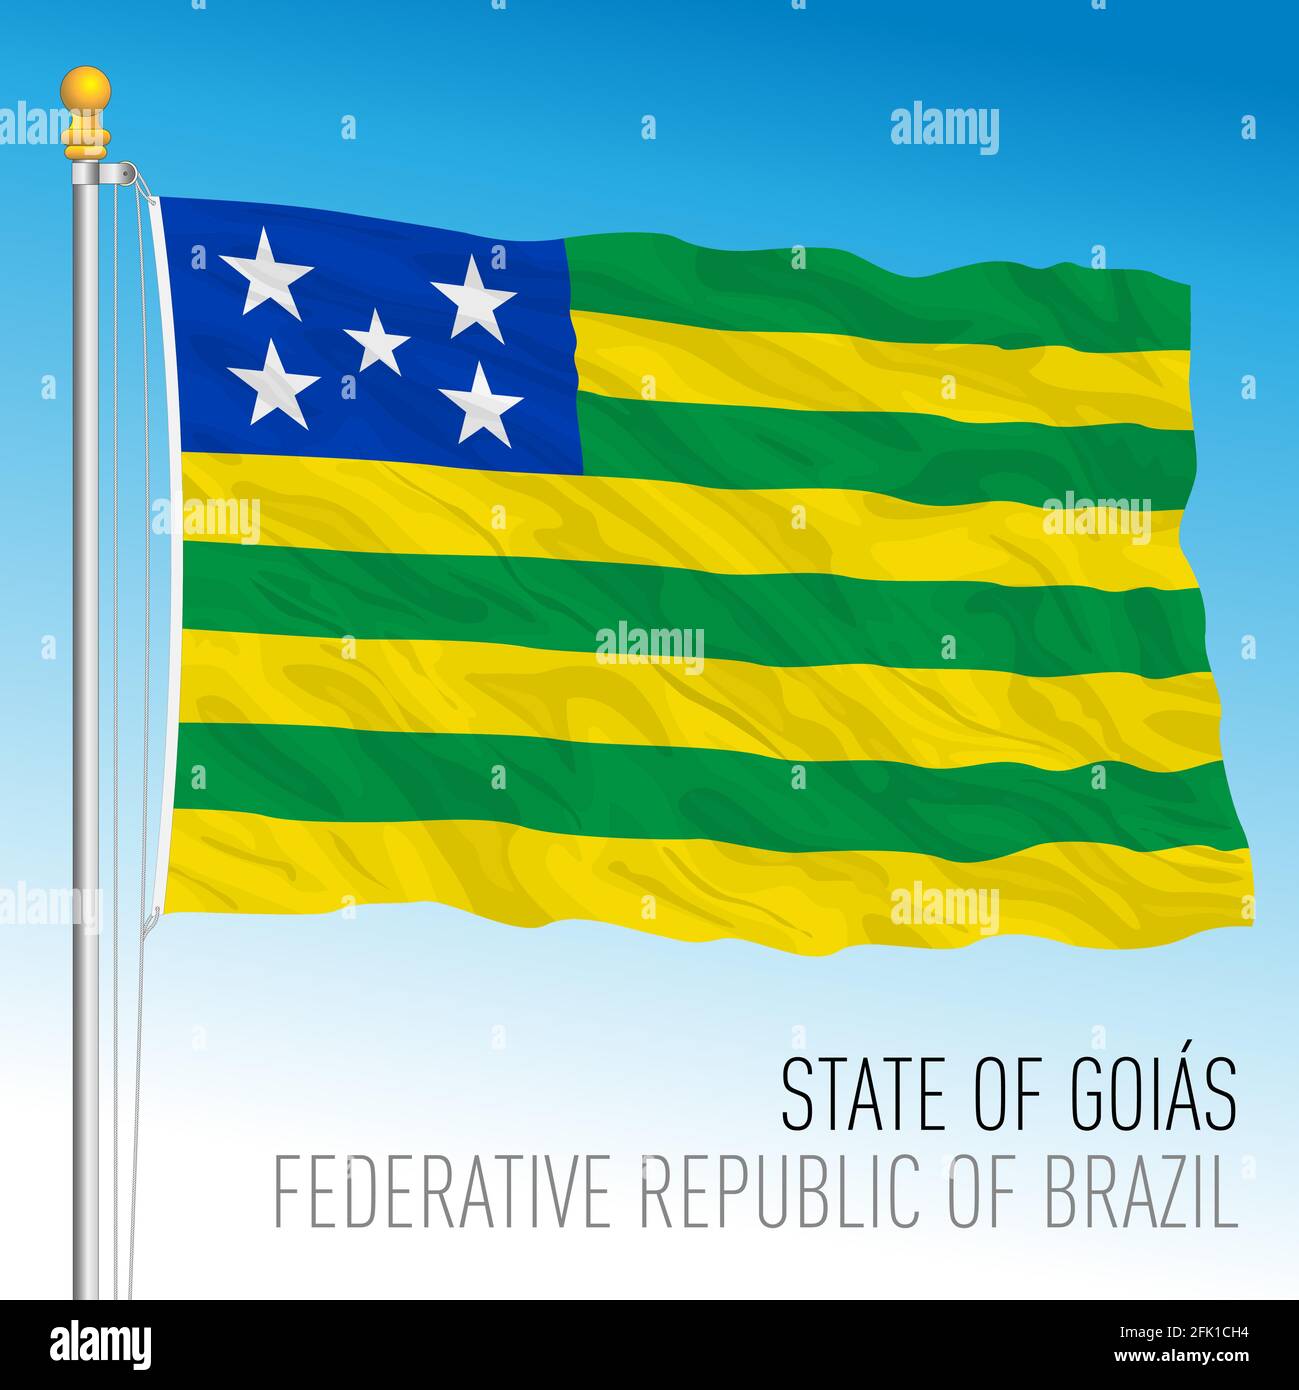 State of Goias, official regional flag, Brazil, vector illustration Stock Vector